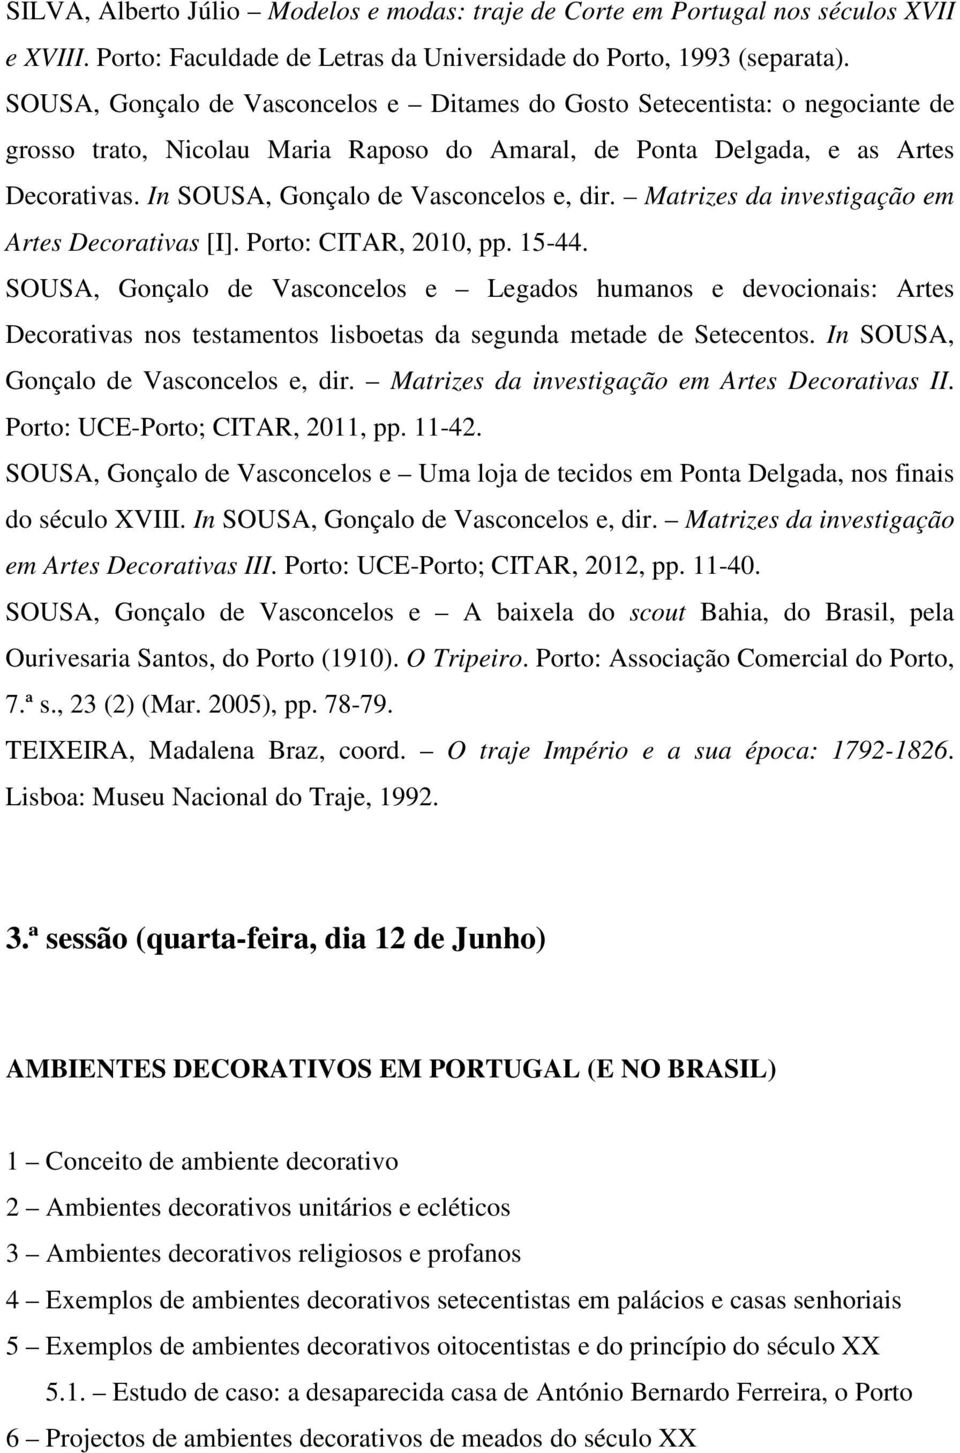 In SOUSA, Gonçalo de Vasconcelos e, dir. Matrizes da investigação em Artes Decorativas [I]. Porto: CITAR, 2010, pp. 15-44.